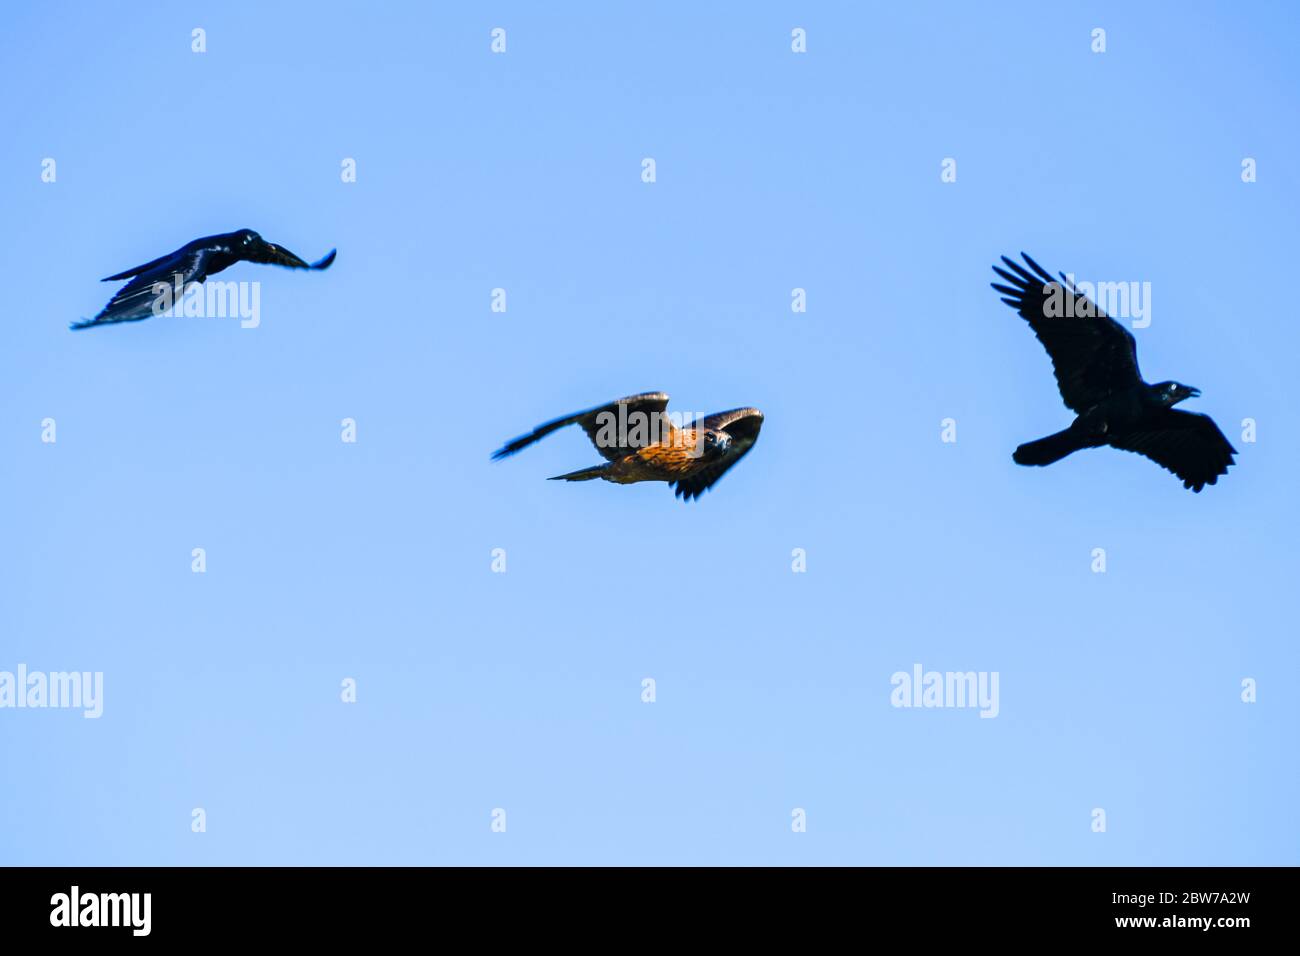 Falcon Hawk marrone guardando la macchina fotografica mentre insegue Black Australian Ravens Crows Werribee South Victoria Australia Foto Stock